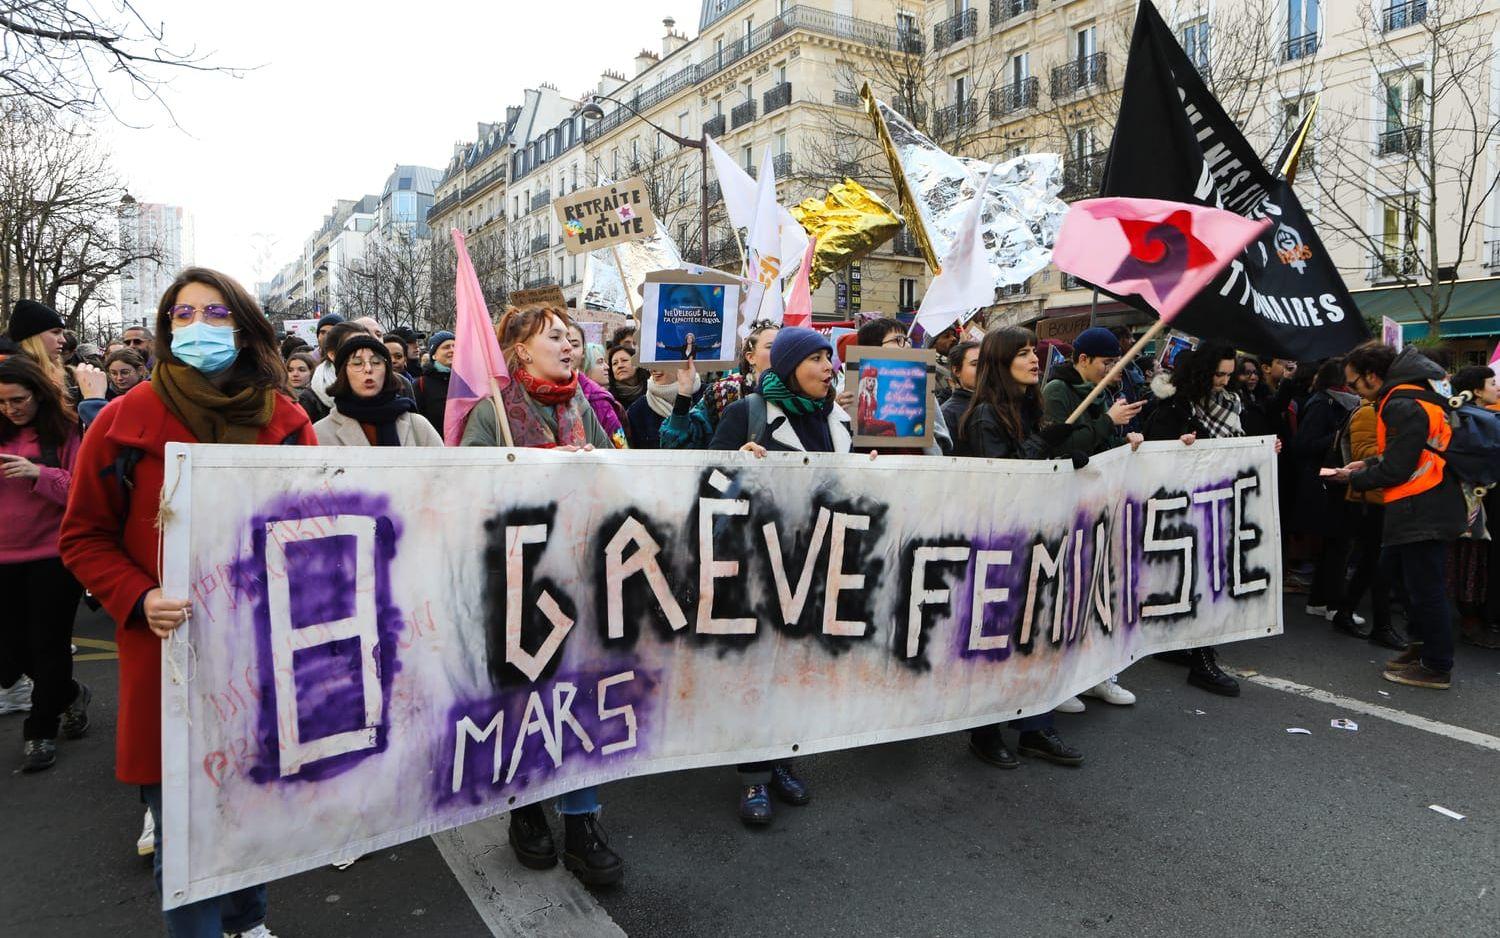 Upp till två miljoner fransmän ska ha tagit till gatorna, enligt franska fackförbund, för att protestera mot en regeringens pensionsreform. Protesterna växer och tisdagens demonstration är den största hittills.